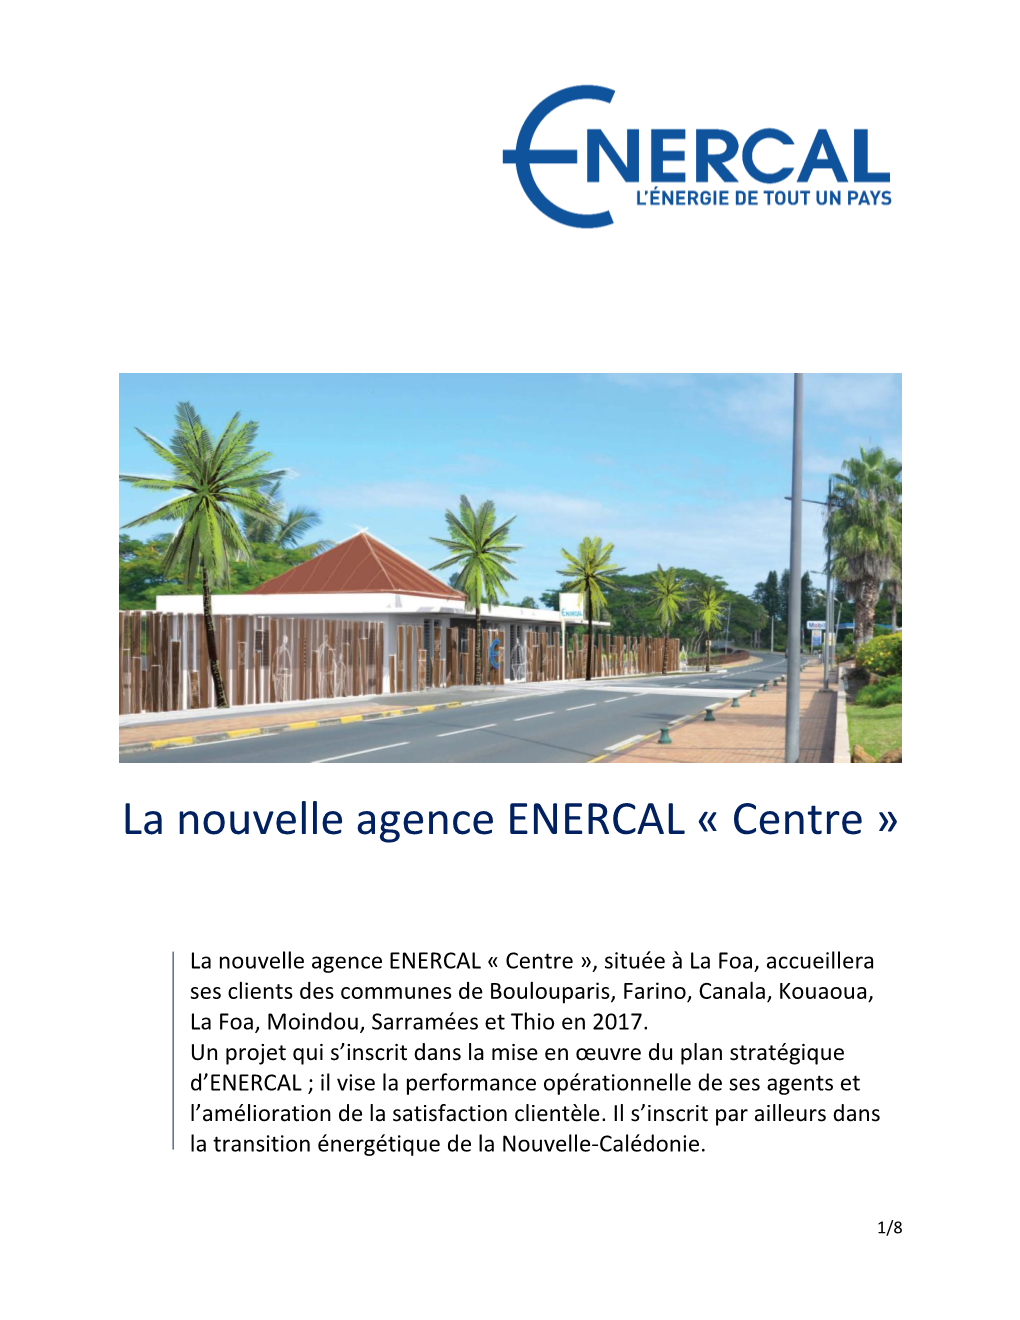 La Nouvelle Agence ENERCAL « Centre »